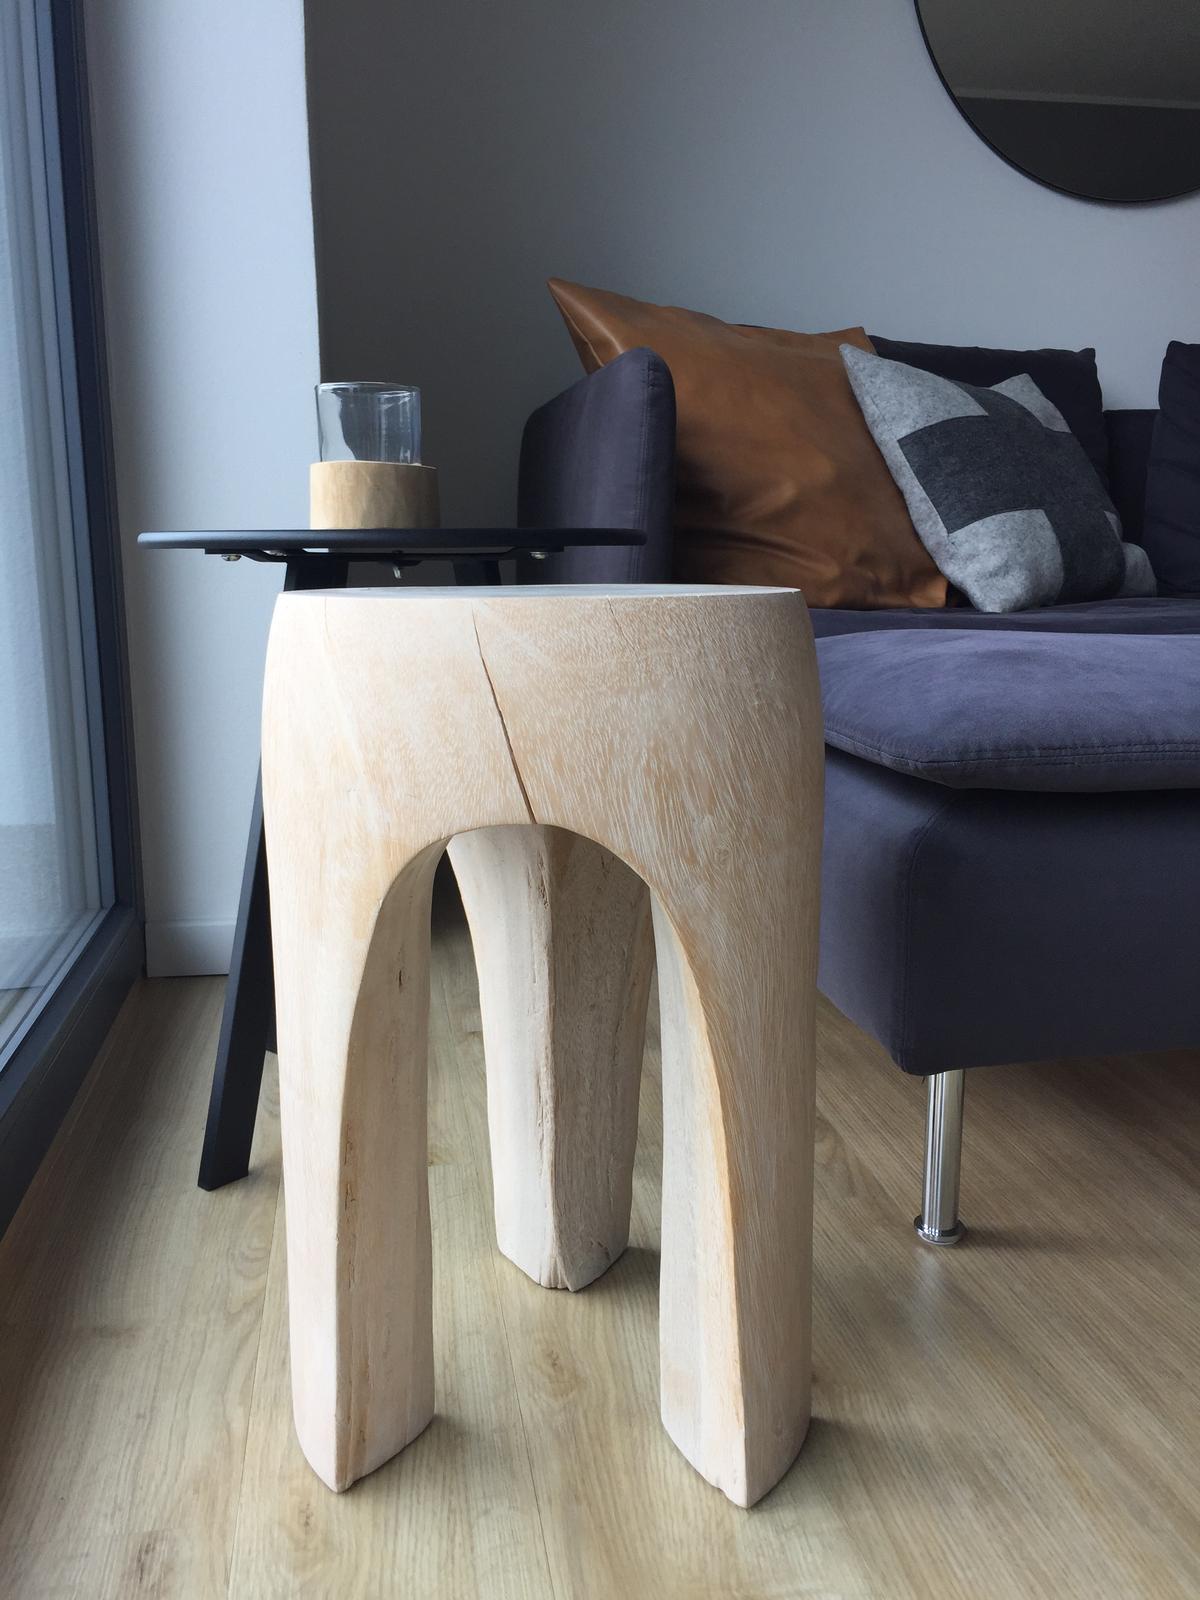 Designova drevena stolicka - Obrázek č. 1